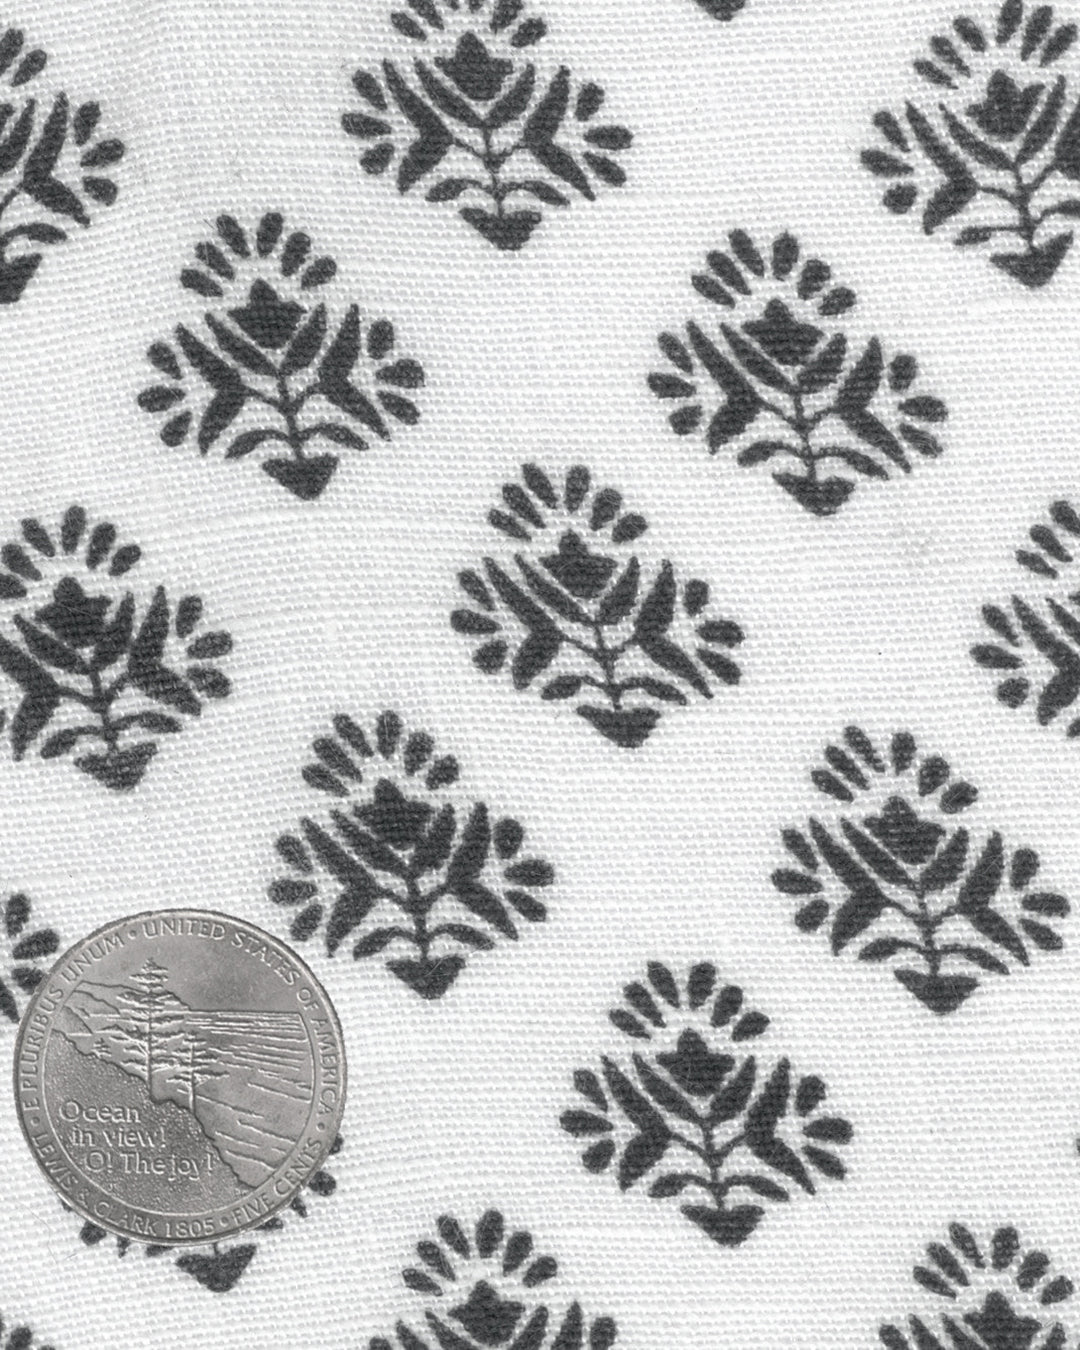 Linen:Black Flowers Printed on White Linen